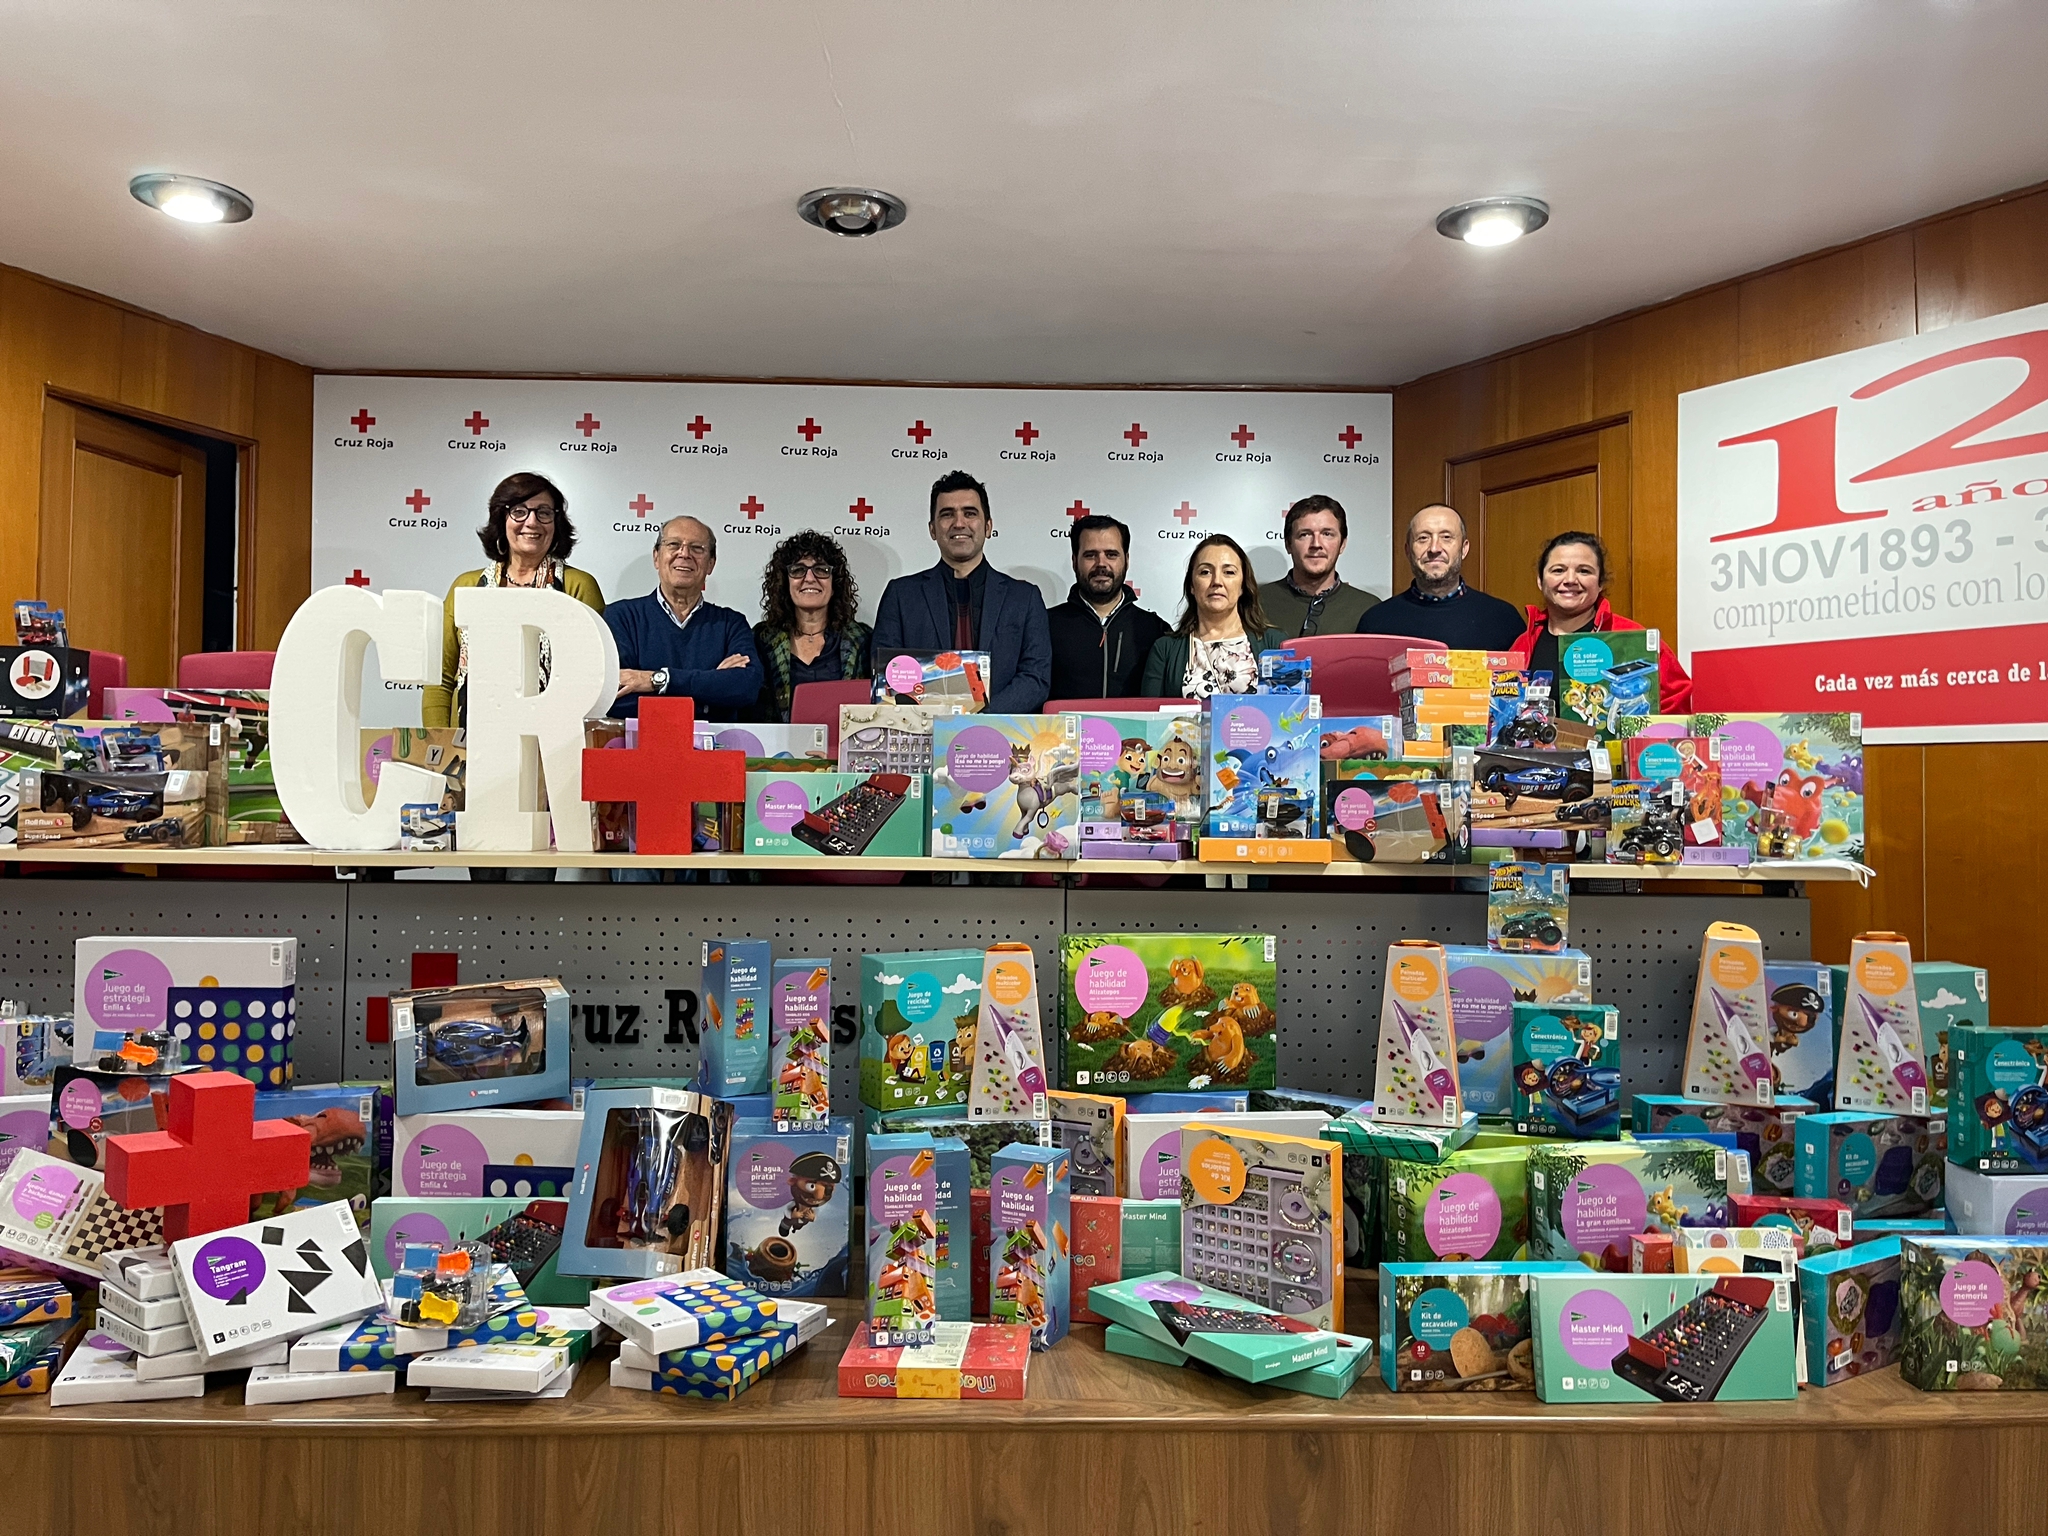 Roja Xx - Magnon reÃºne mÃ¡s de 300 juguetes para la campaÃ±a ciudadana Huelva es  Solidaria, en beneficio de Cruz Roja | Ence